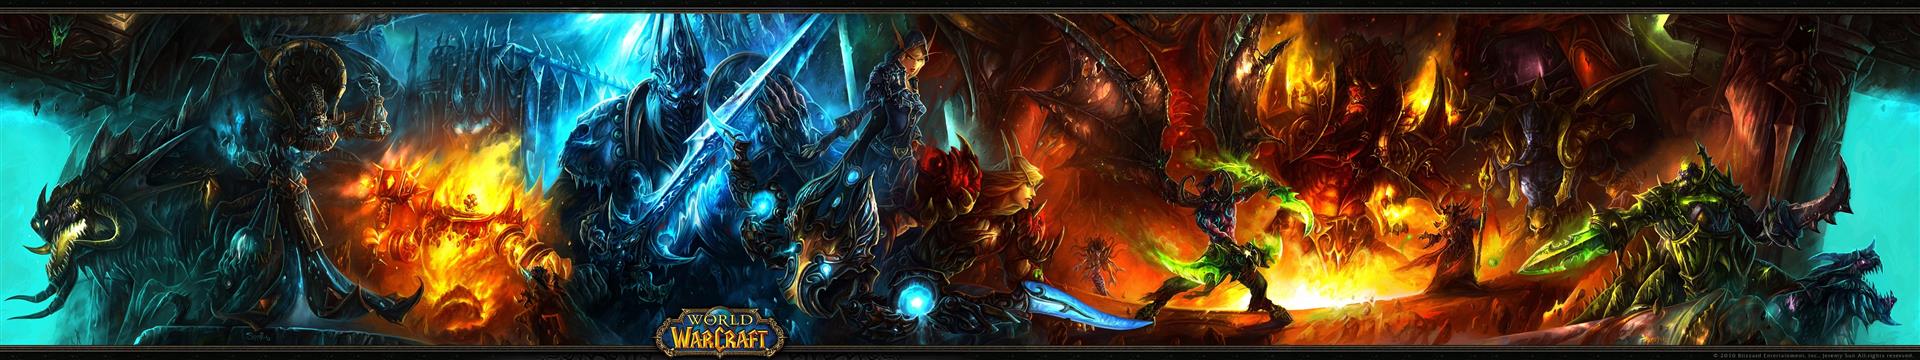 world of warcraft multiscreen 5760x1080 Video Games World of Warcraft HD Art, HD wallpaper